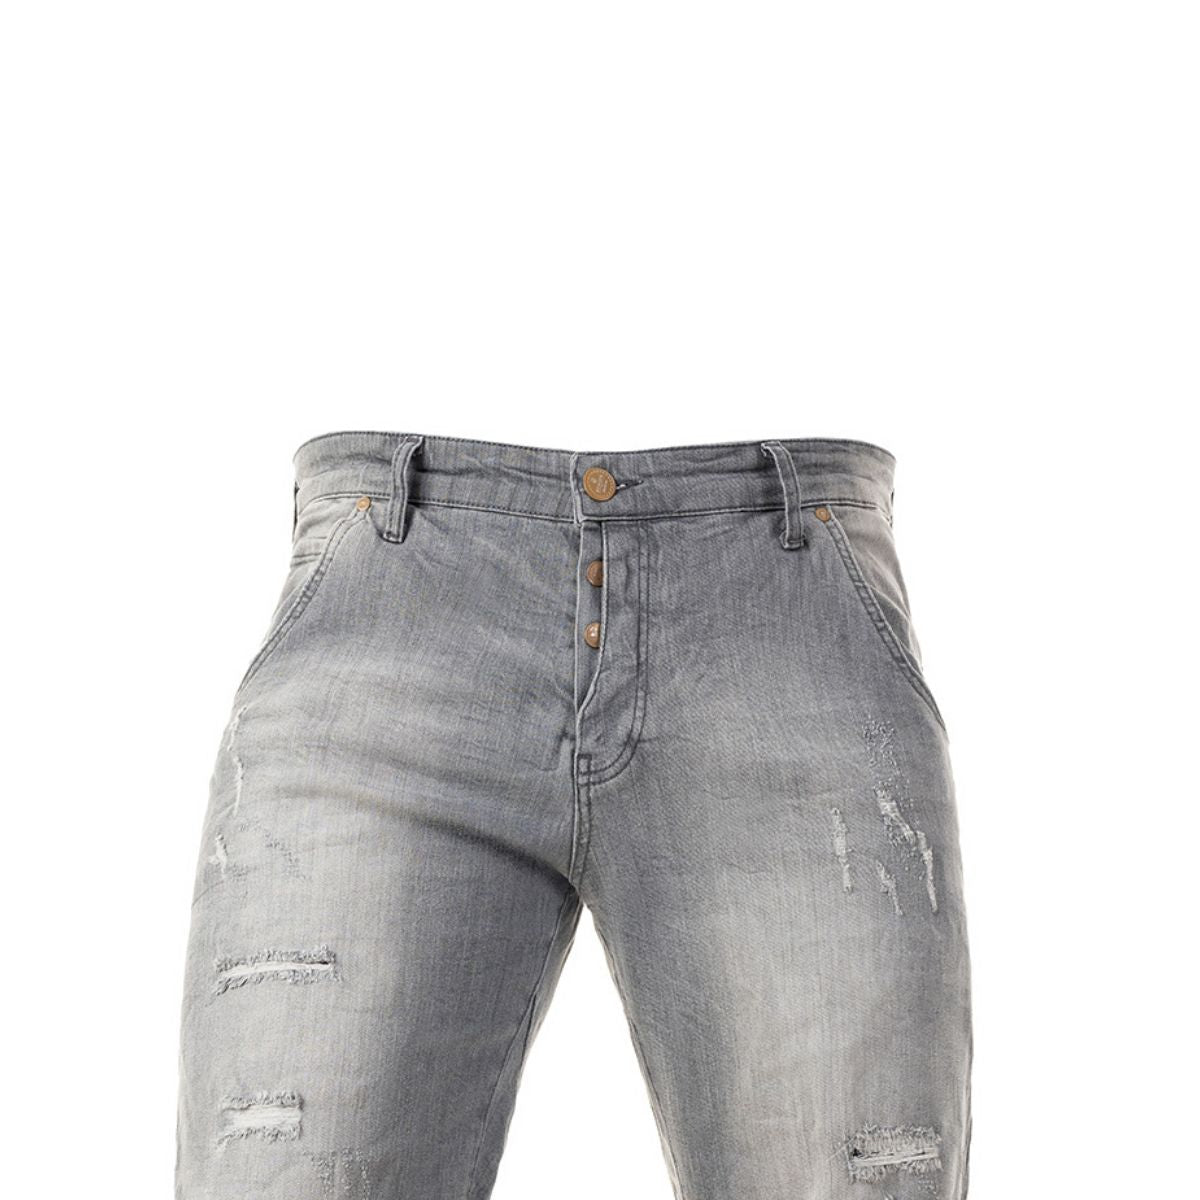 Ανδρική Βερμούδα Jeans Senior με Σκισίματα (3350) - GREY - Panda Clothing